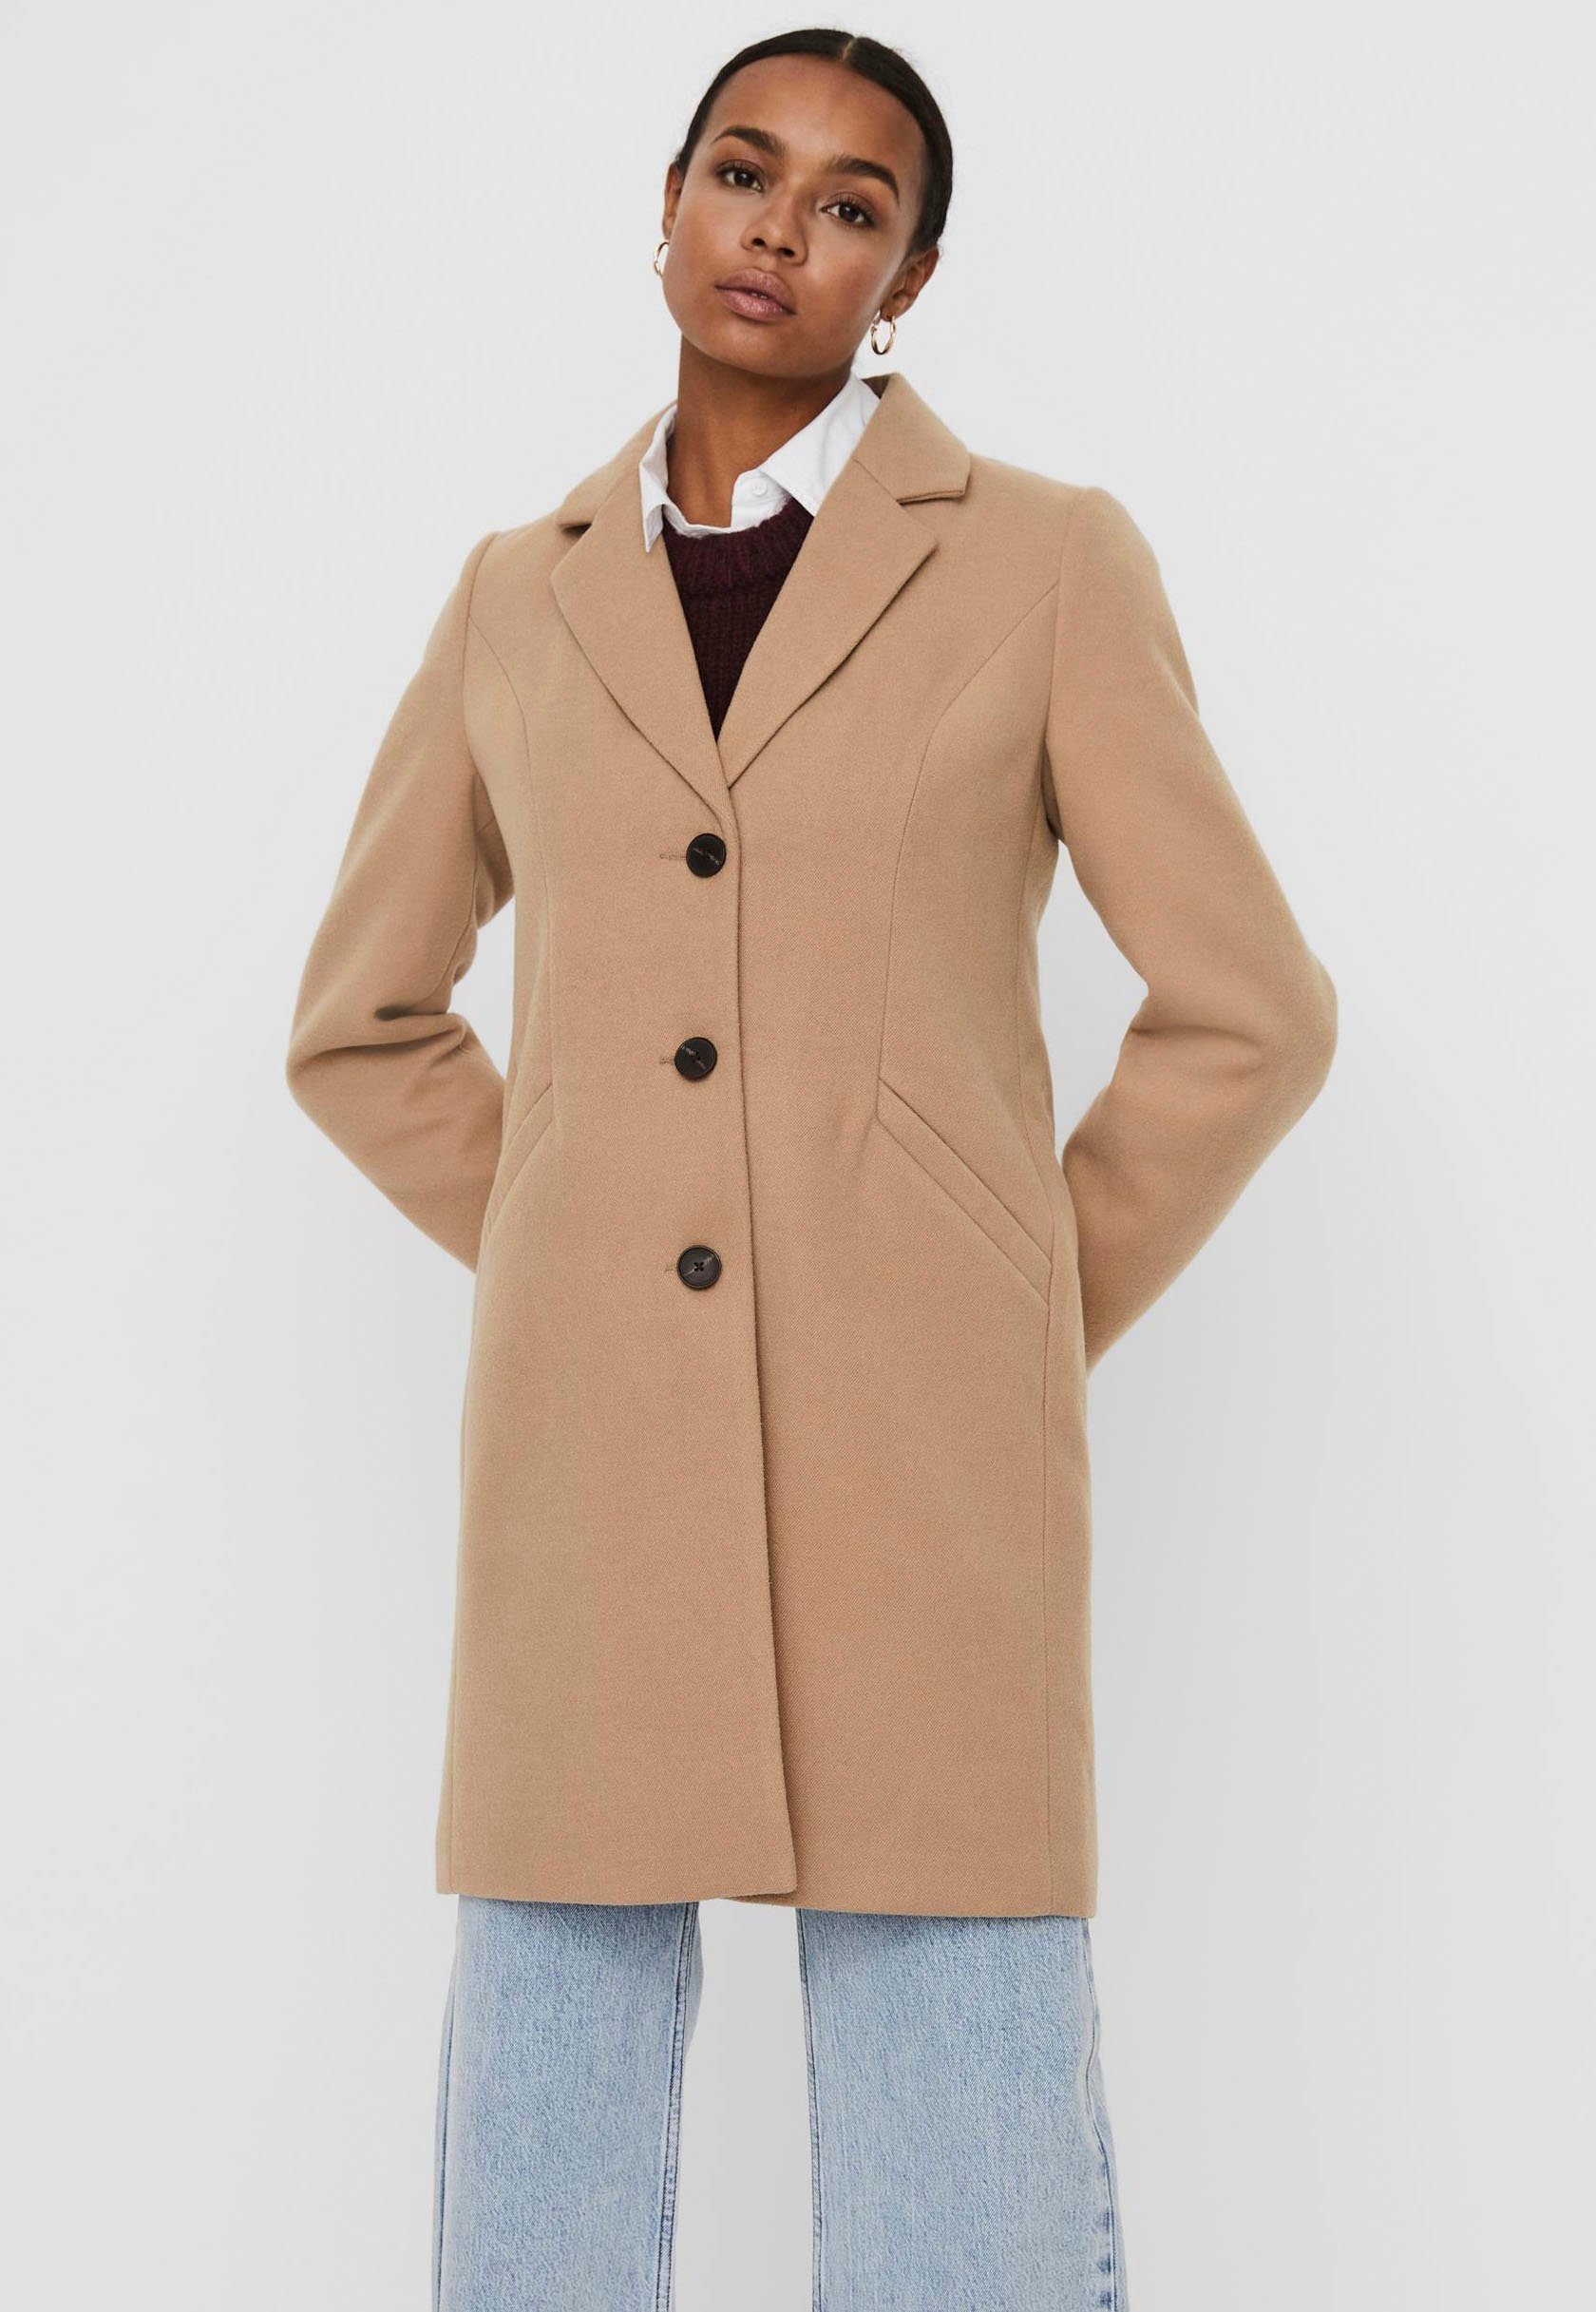 Mantel für Damen » Damenmäntel online kaufen| OTTO